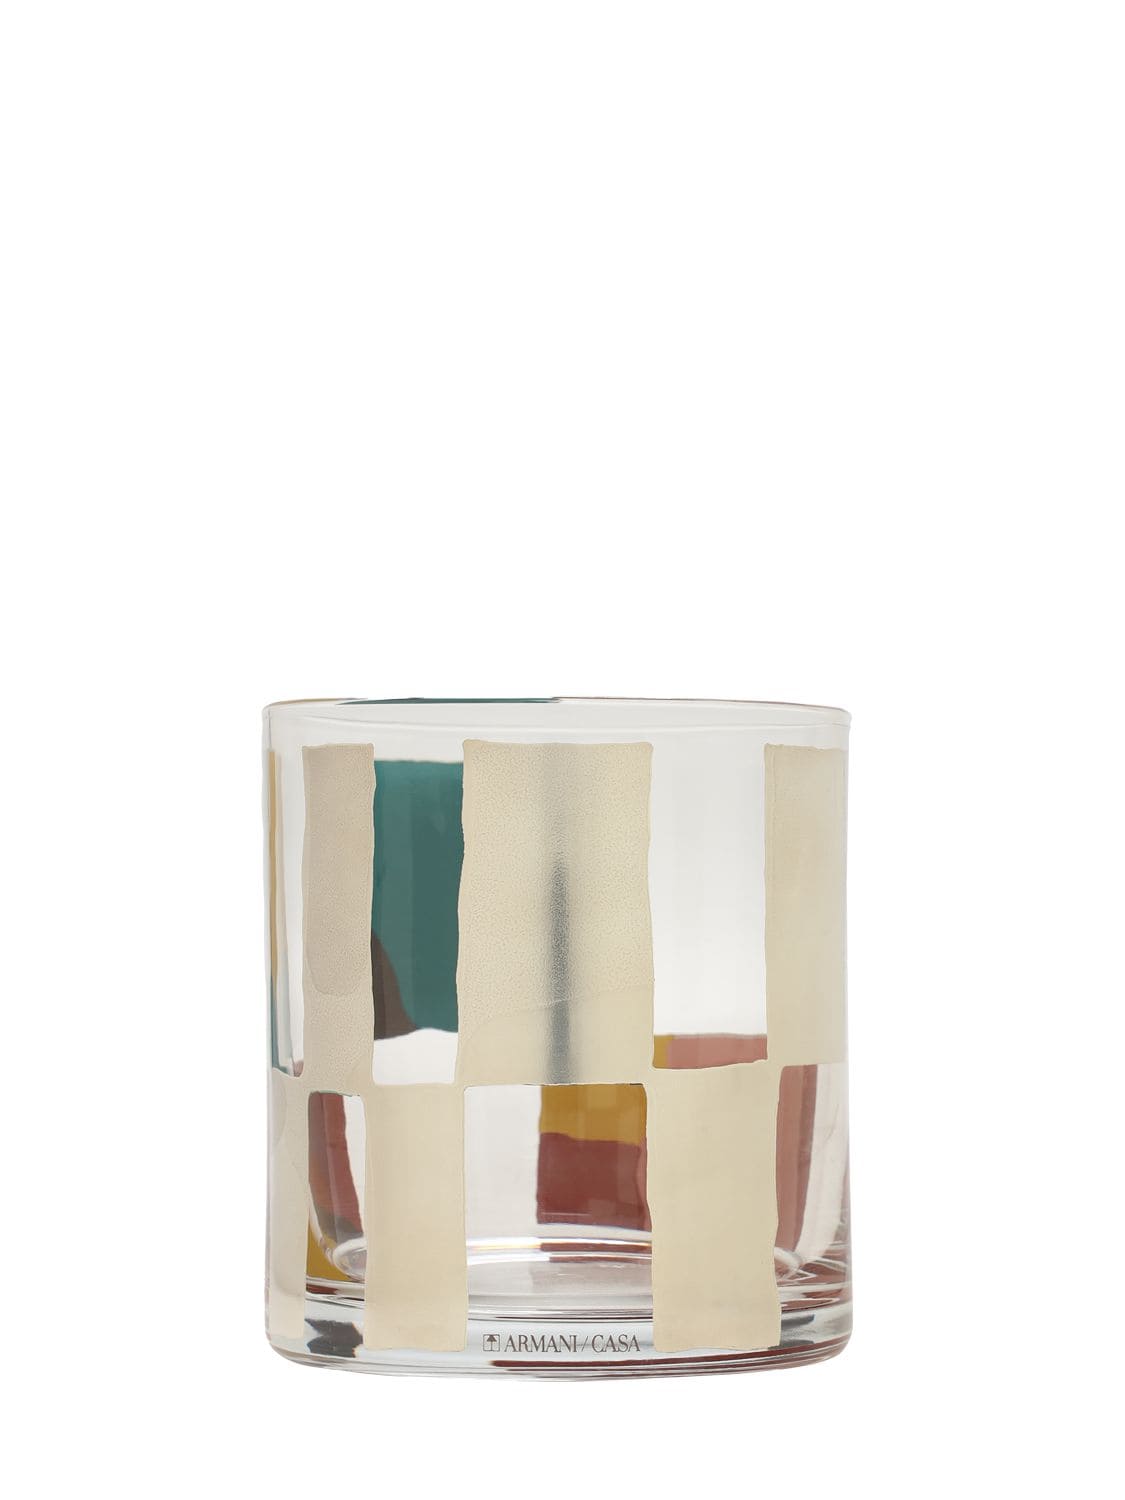 Armani/casa Priamo Small Vase In Transparent